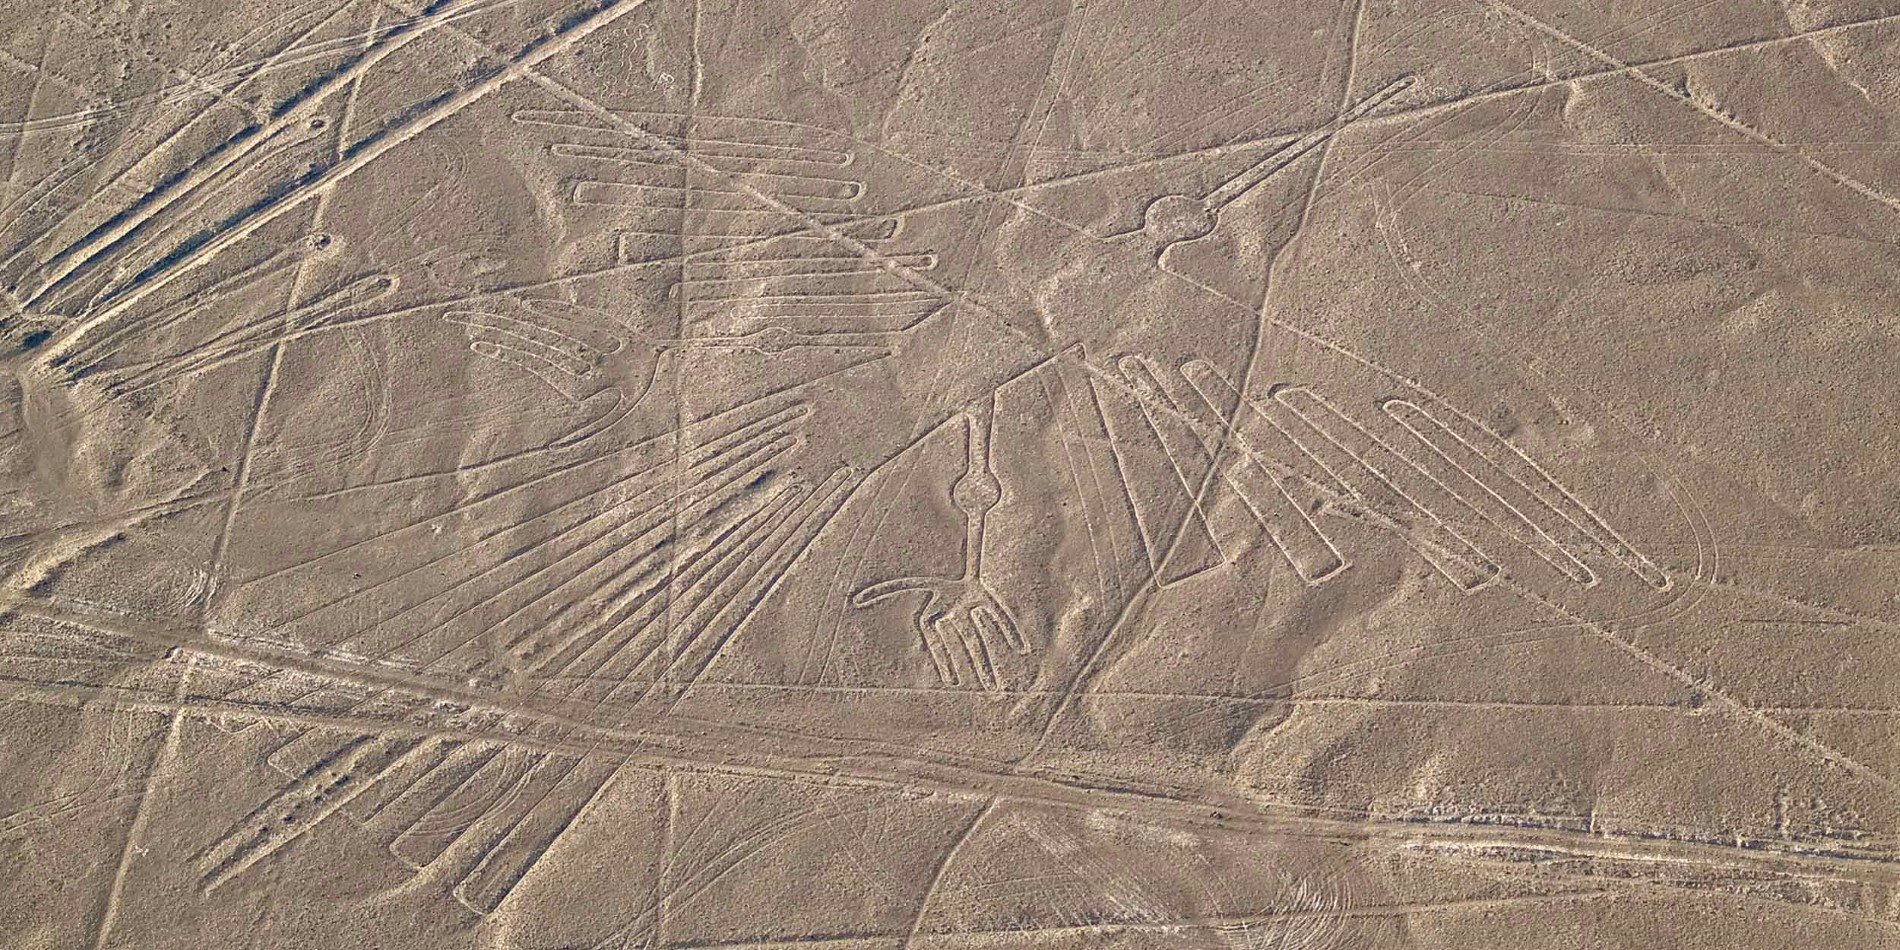 Condor geoglyph, Nazca lines, Peru